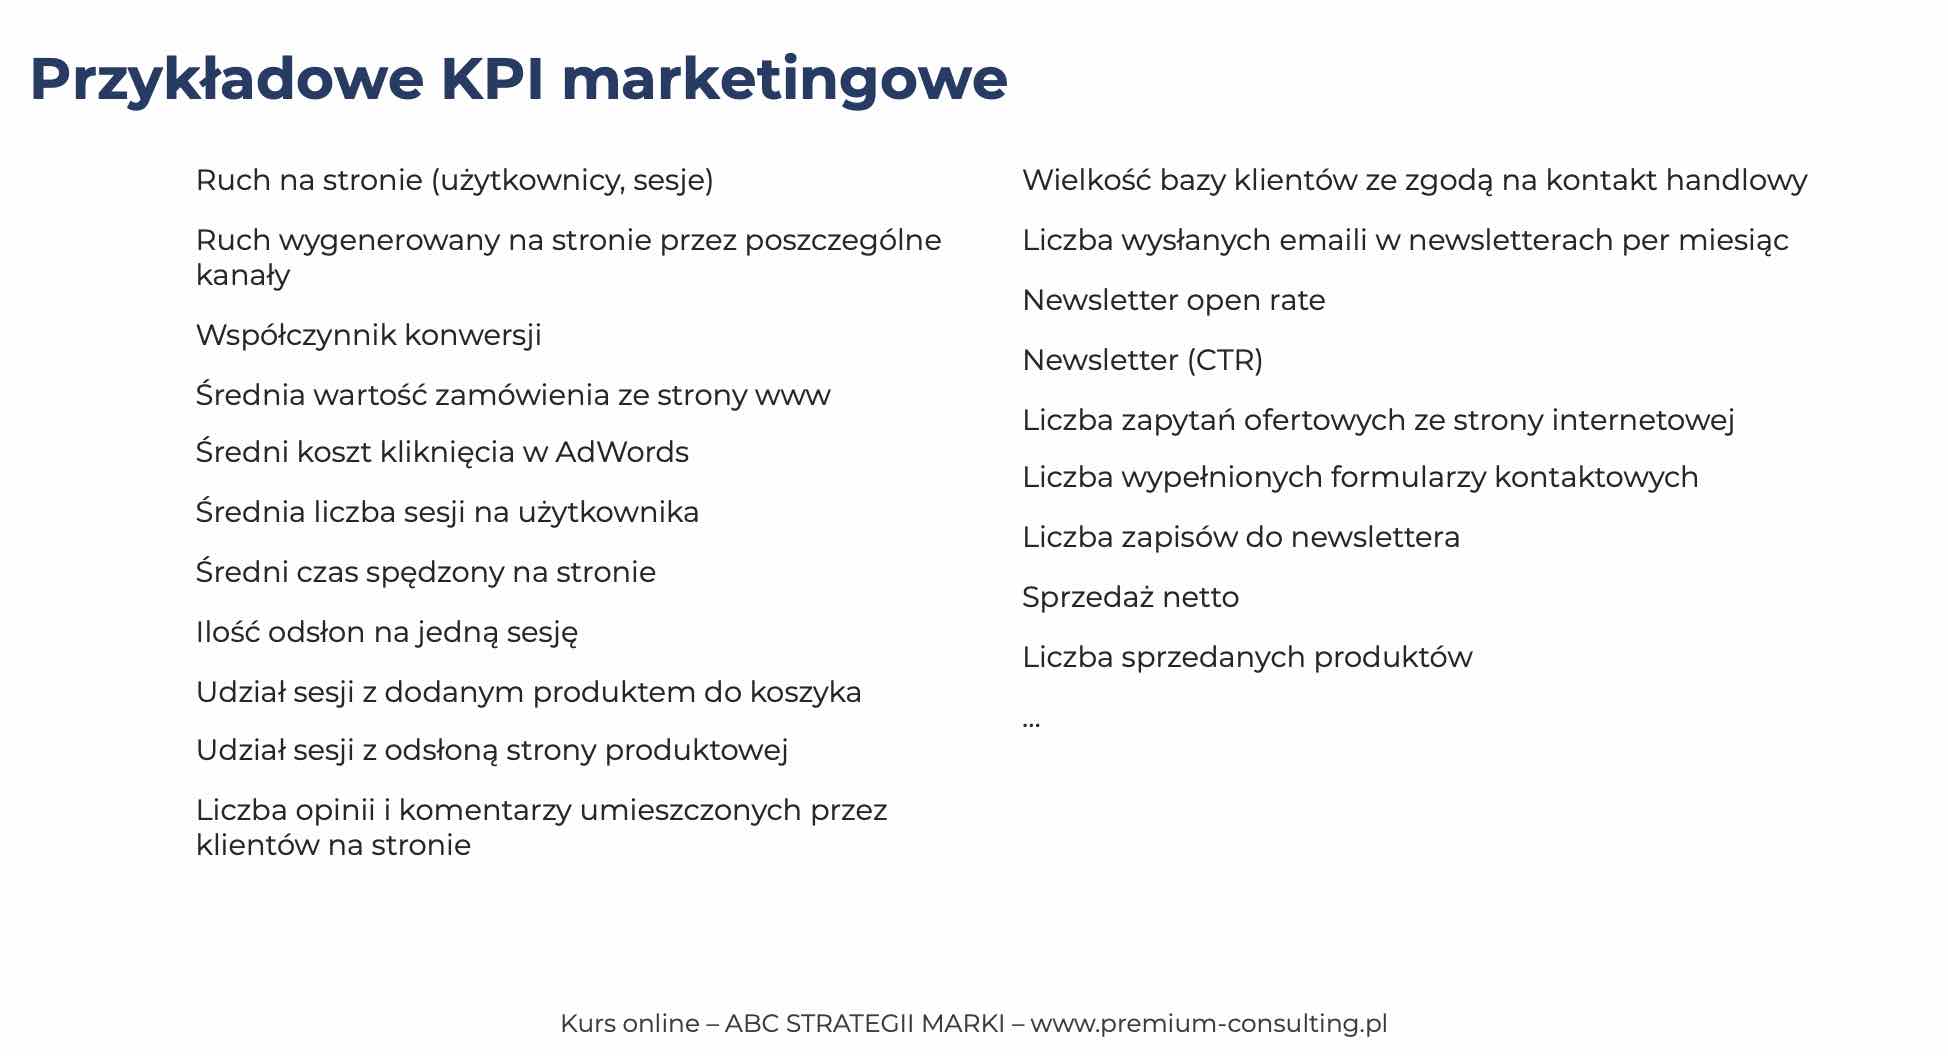 Przykładowe KPI marketingowe – strategia komunikacji marki